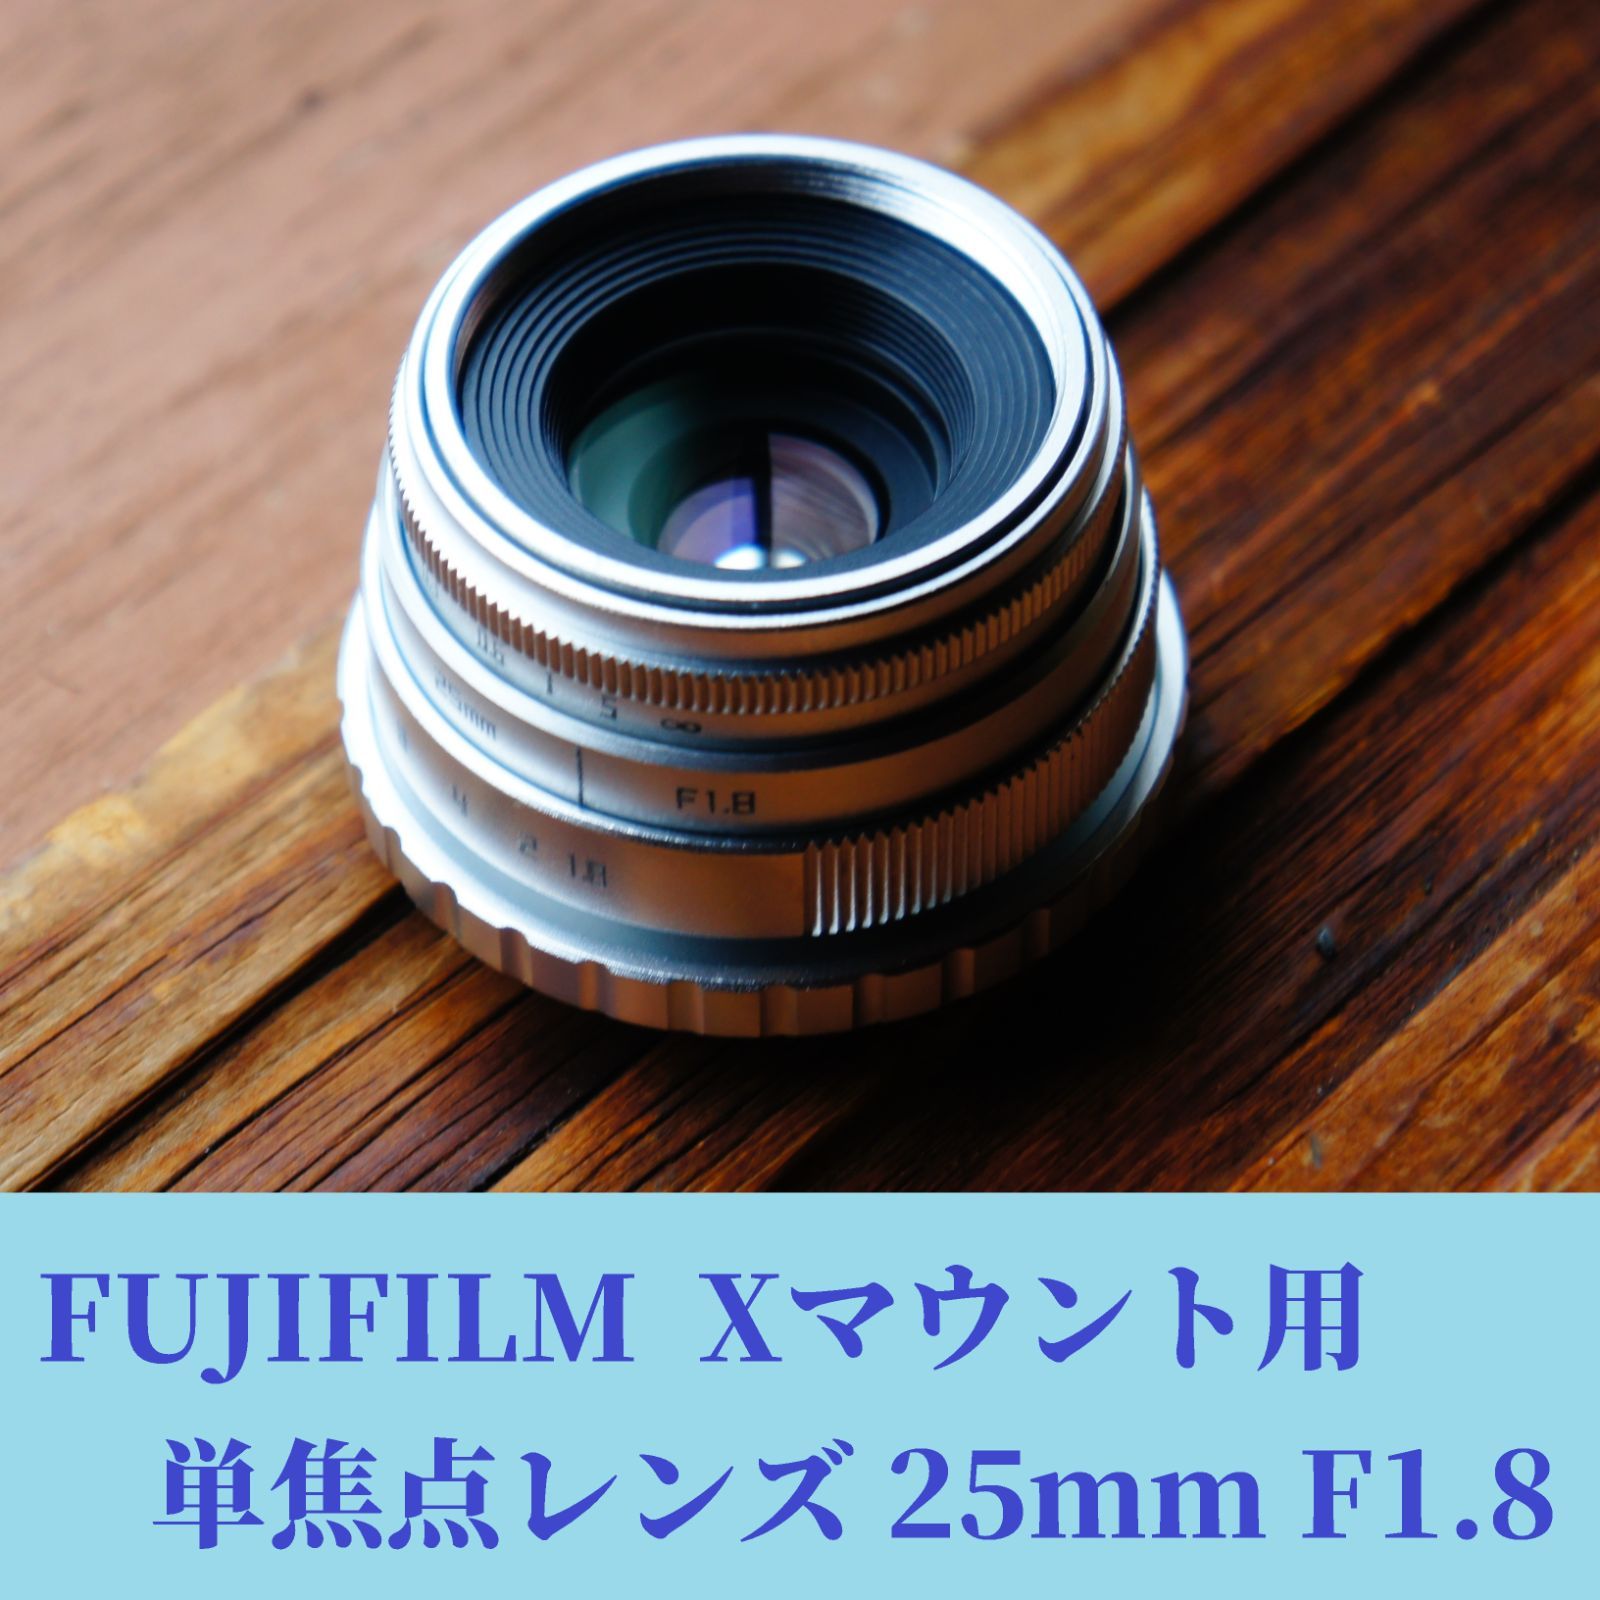 富士フィルム単焦点レンズ 25mm f 1.8 - レンズ(単焦点)